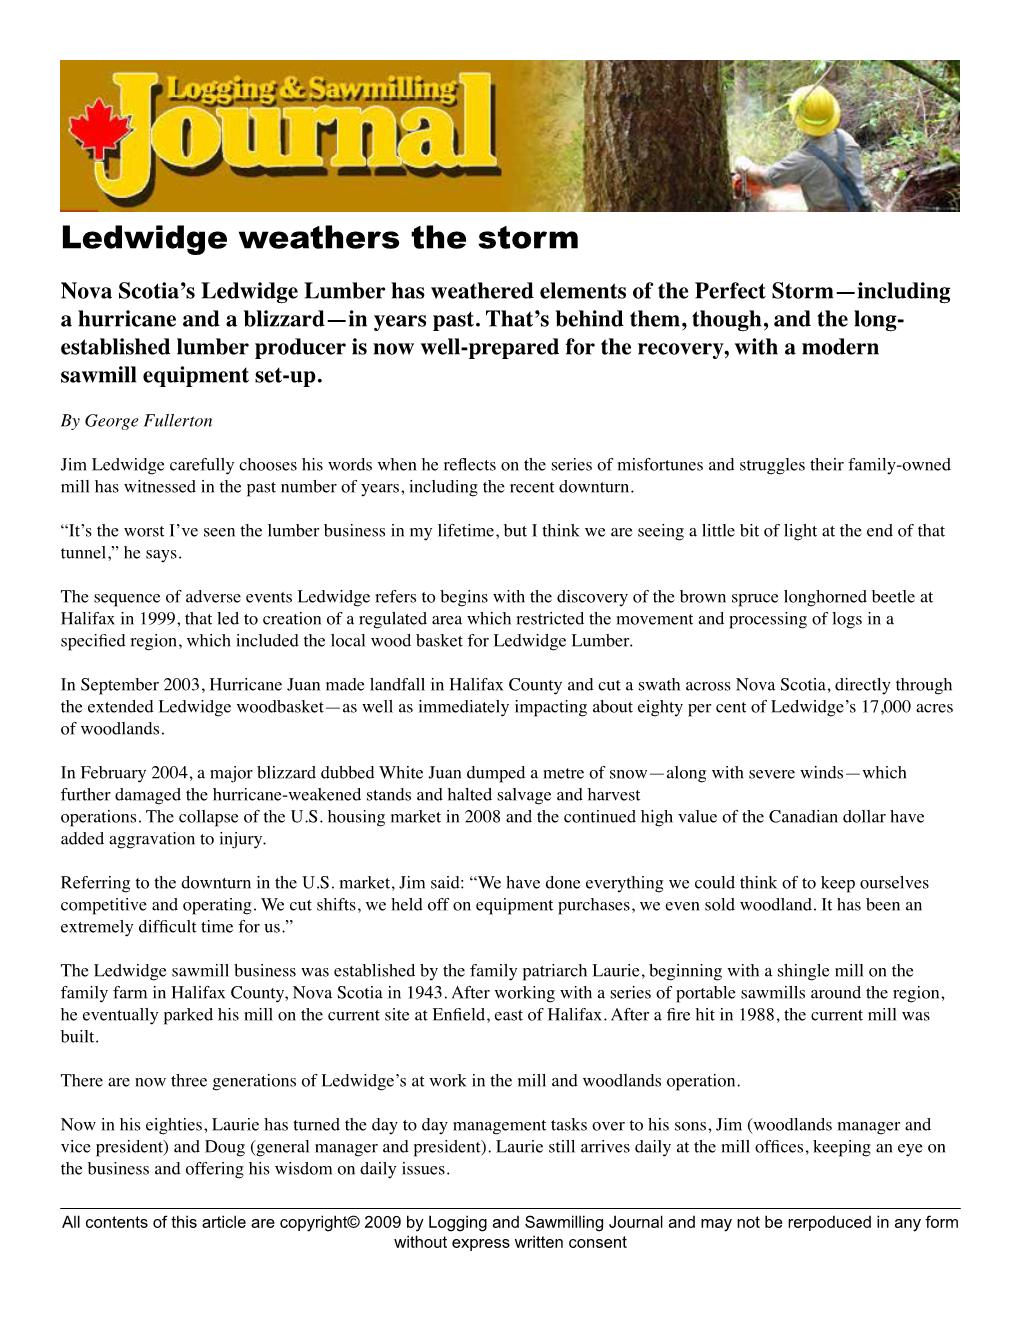 Ledwidge Weathers the Storm